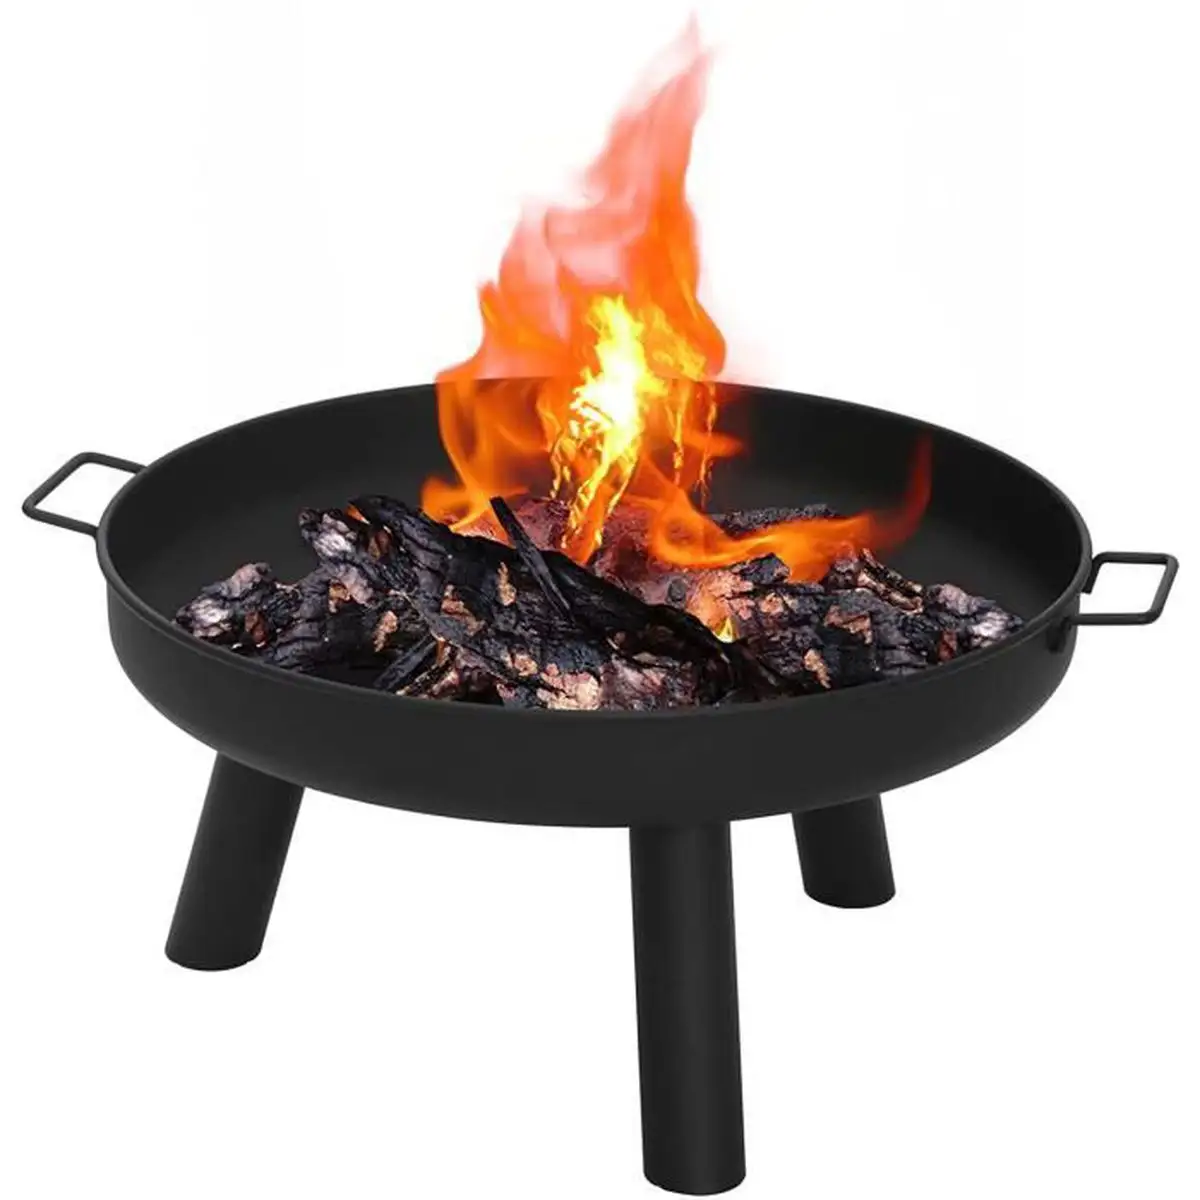 Exterieur de la cour arriere Patio Camping Wood Burning Fire Pit Outdoor Kitchen Warming Fireplaces